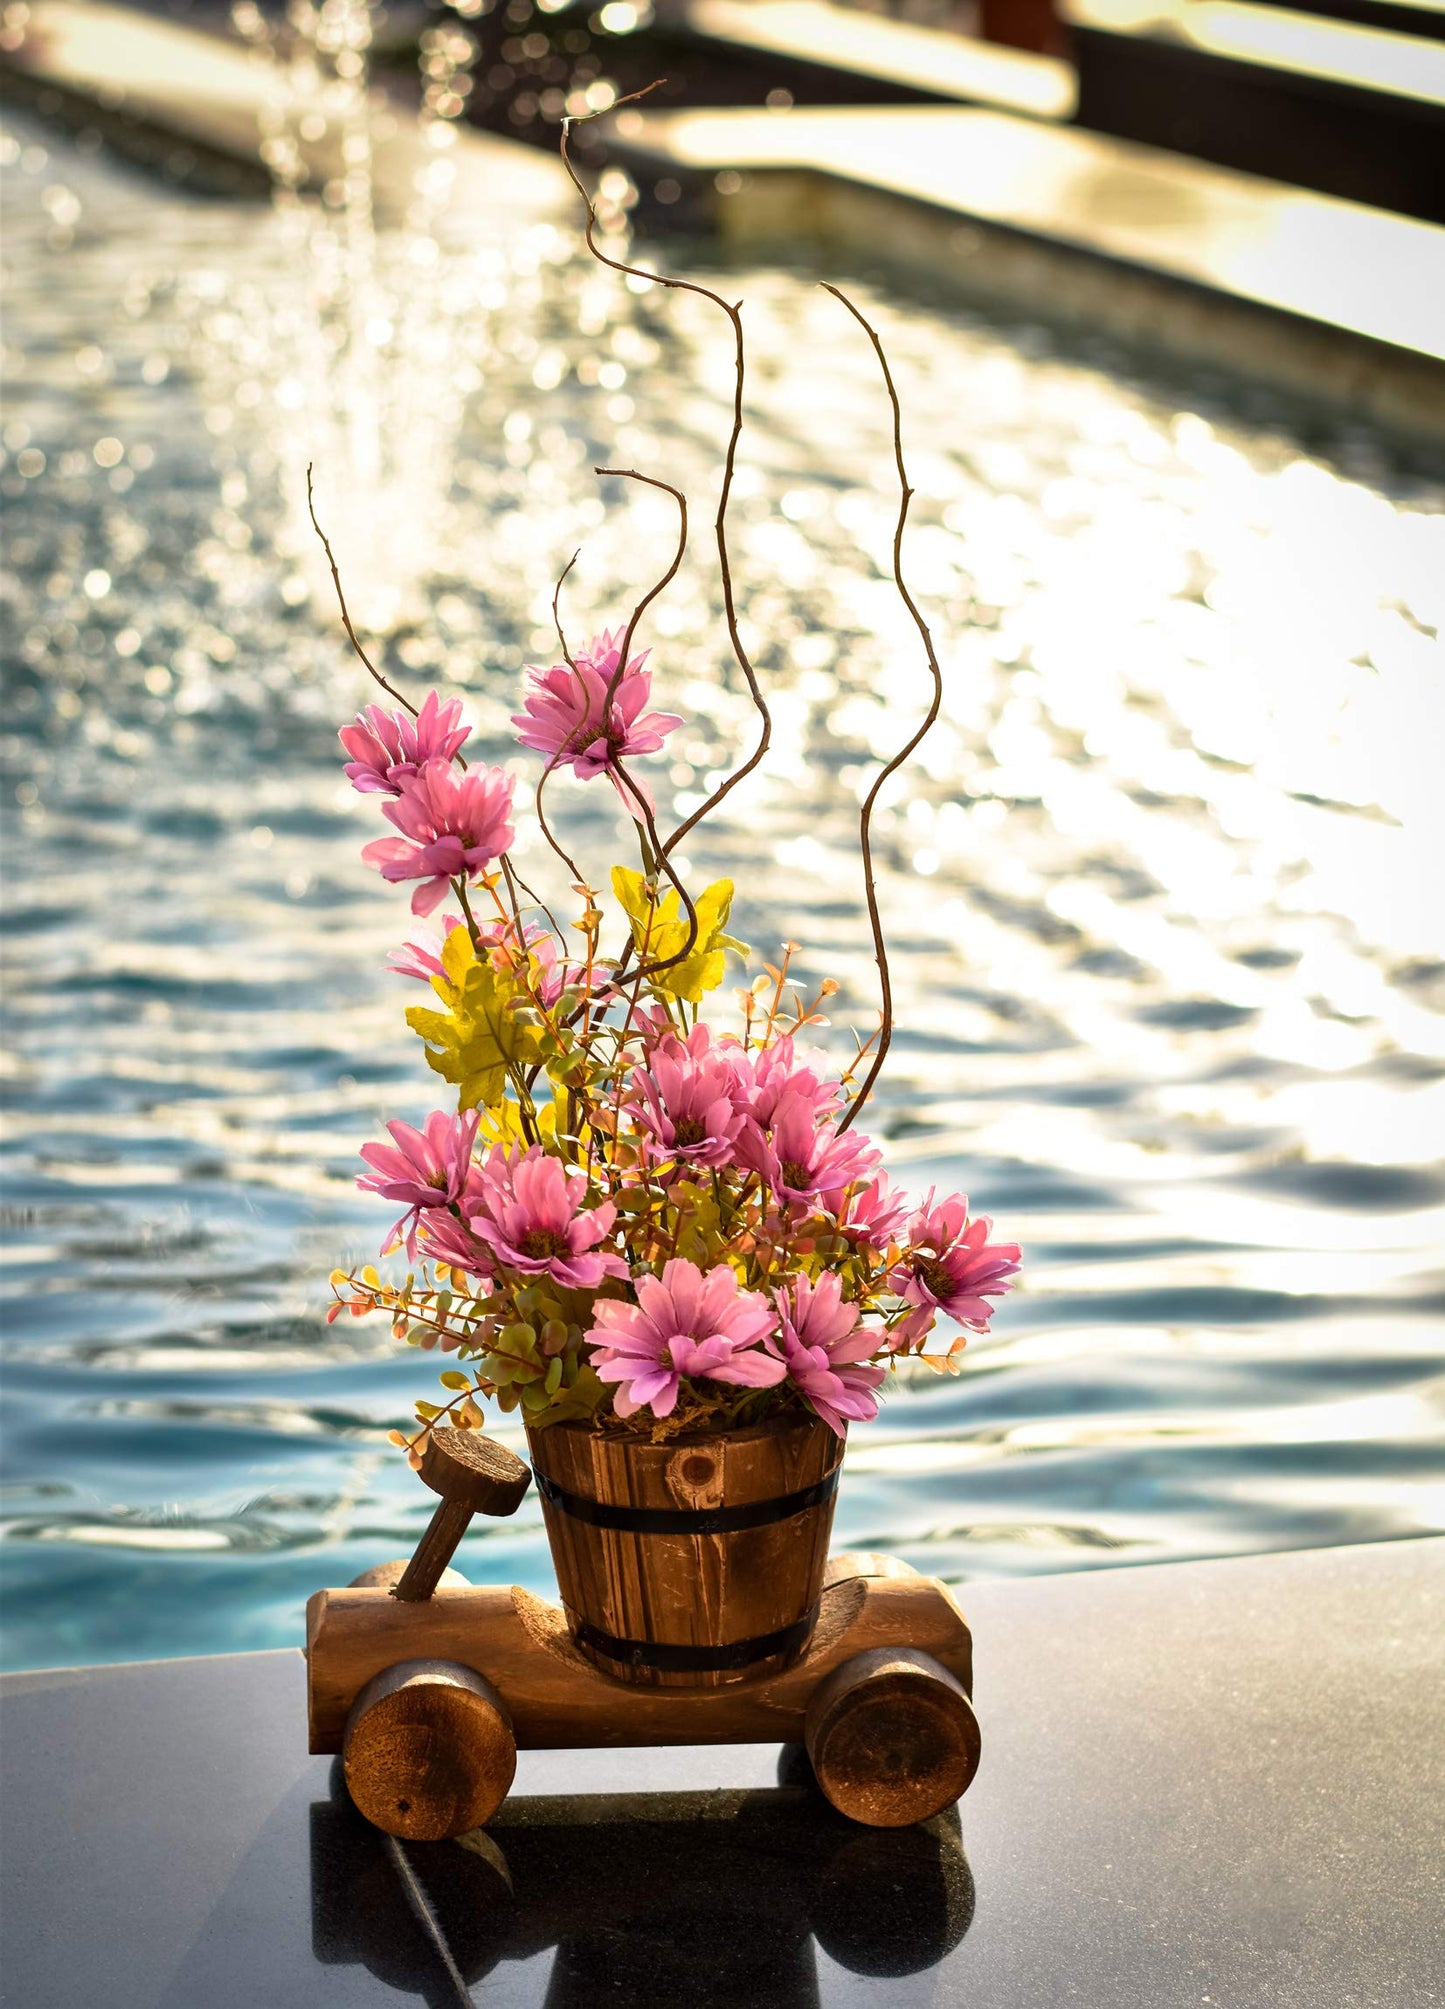 YATAI Creative Wooden Plants Pot Cactus Succulents Plant Pots Flowers Basket Garden Wood Planter Flowers Vaes – Home Décor Wooden Pots